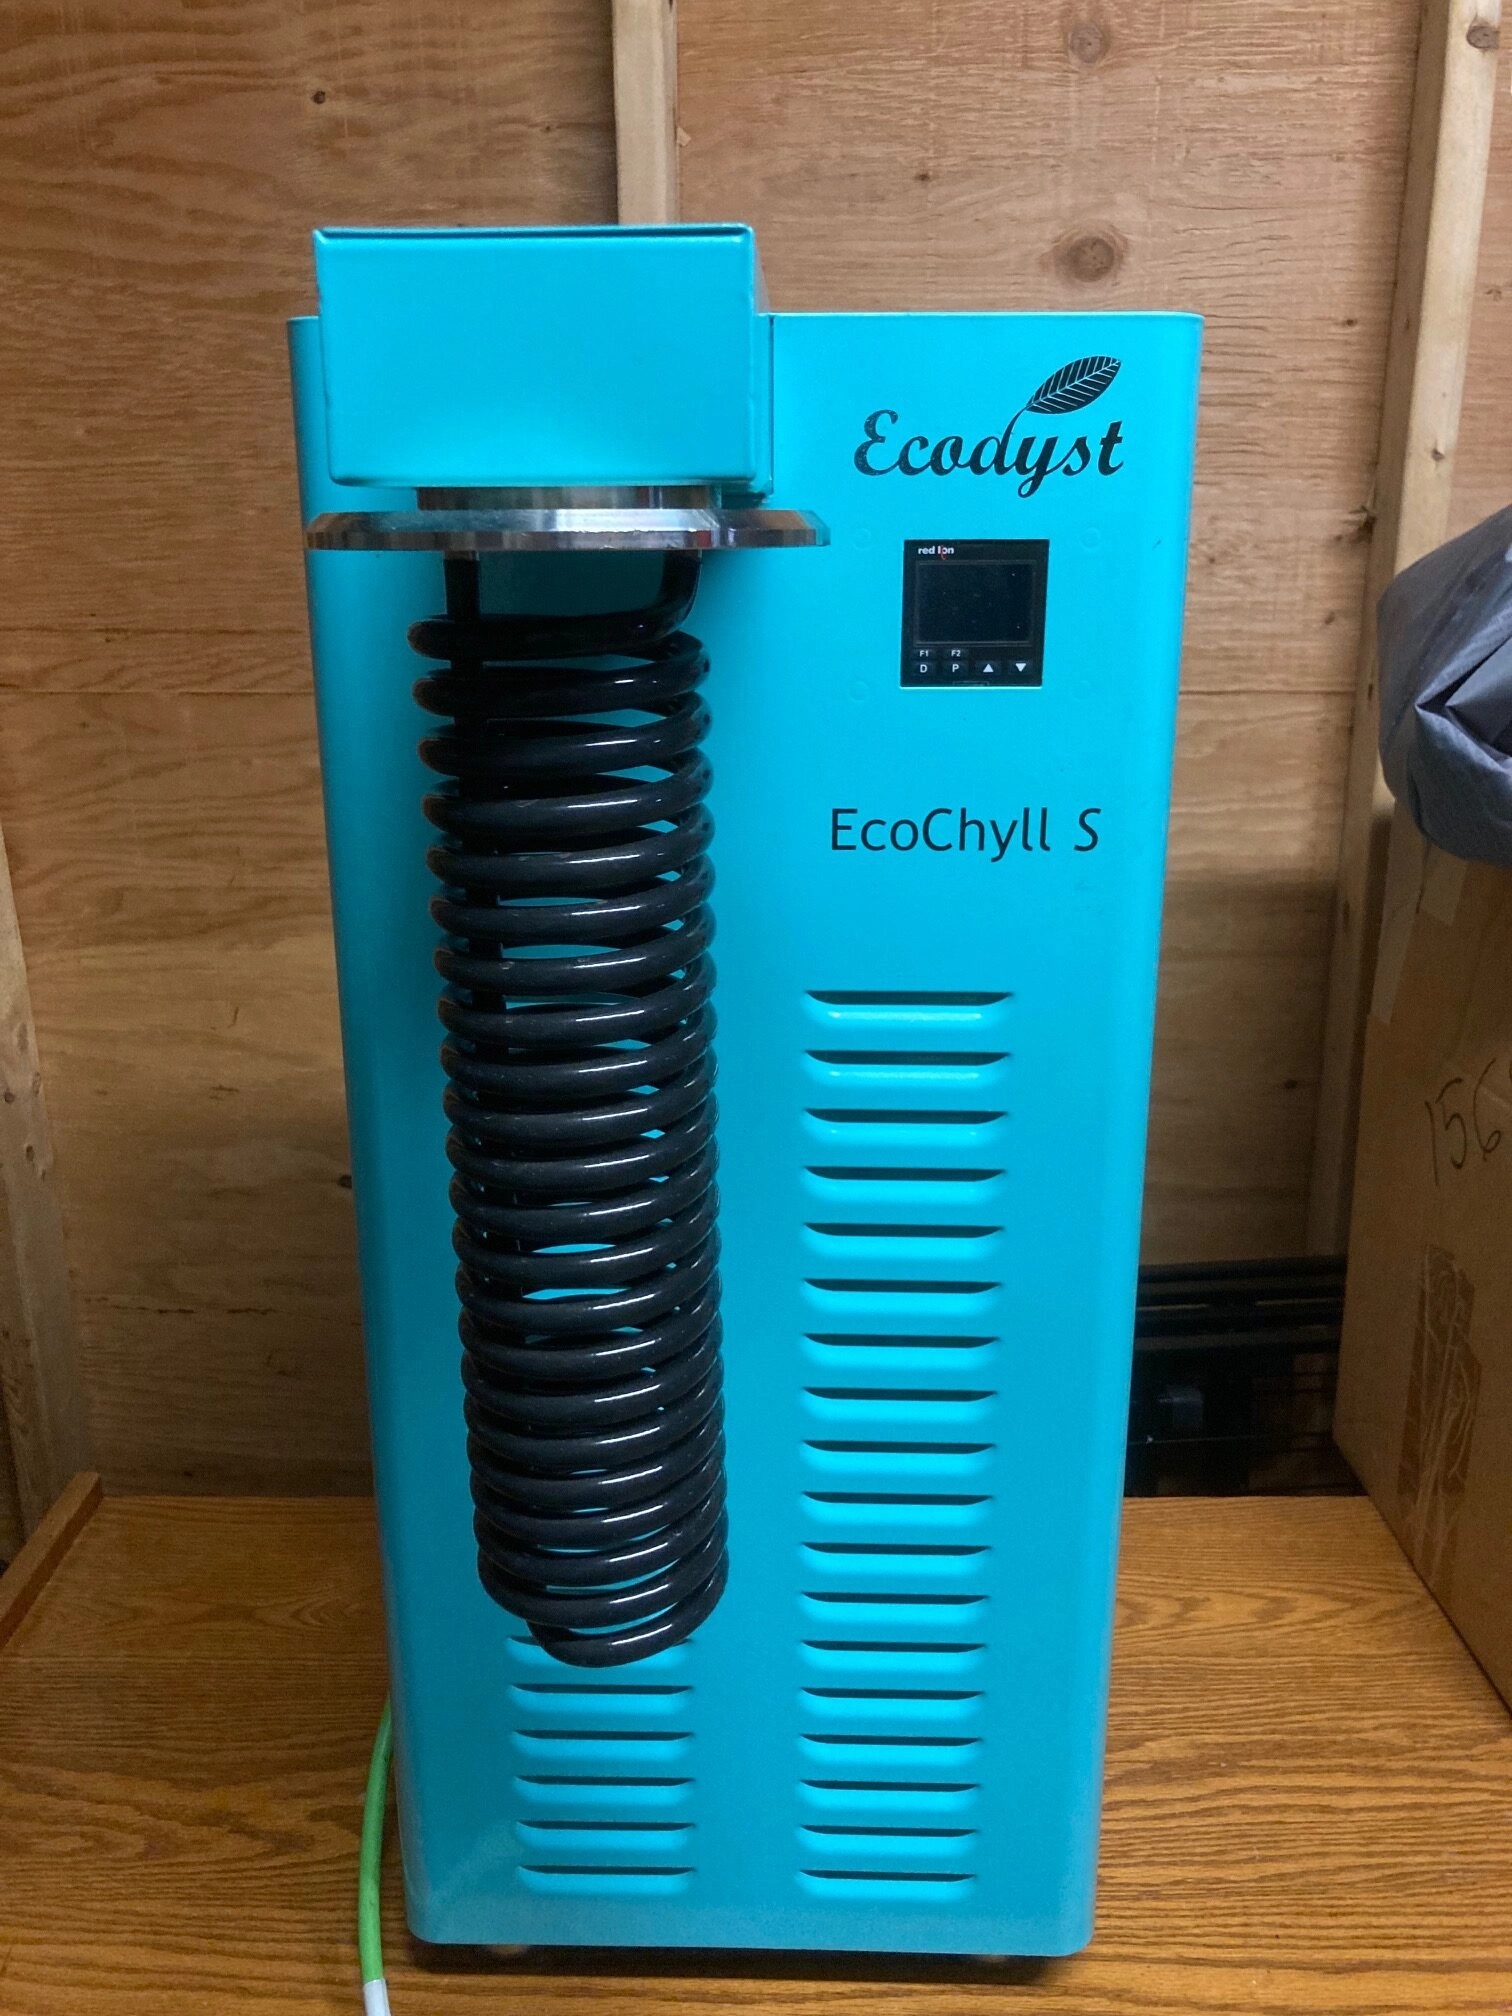 Ecodyst Ecodyst EcoChyll S Evaporation System Evaporator